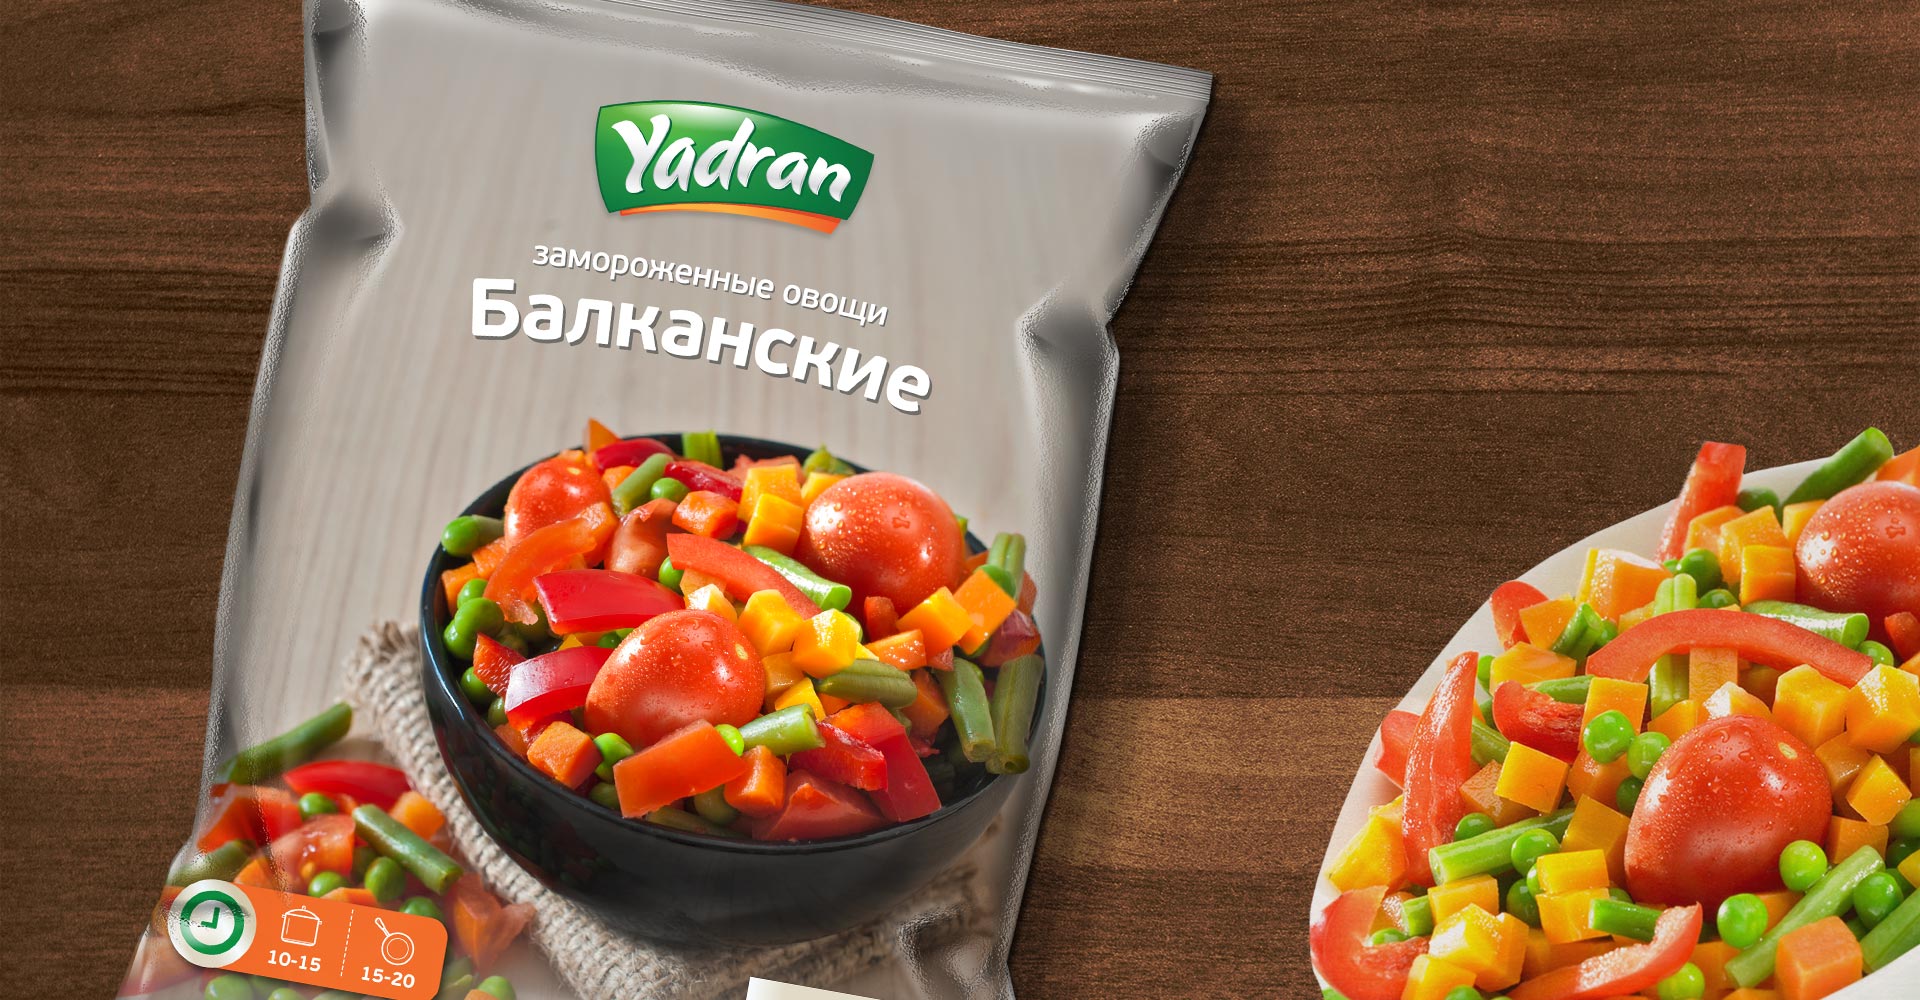 Dizajn i izrada pakovanja za smrznuto povrće Yadran